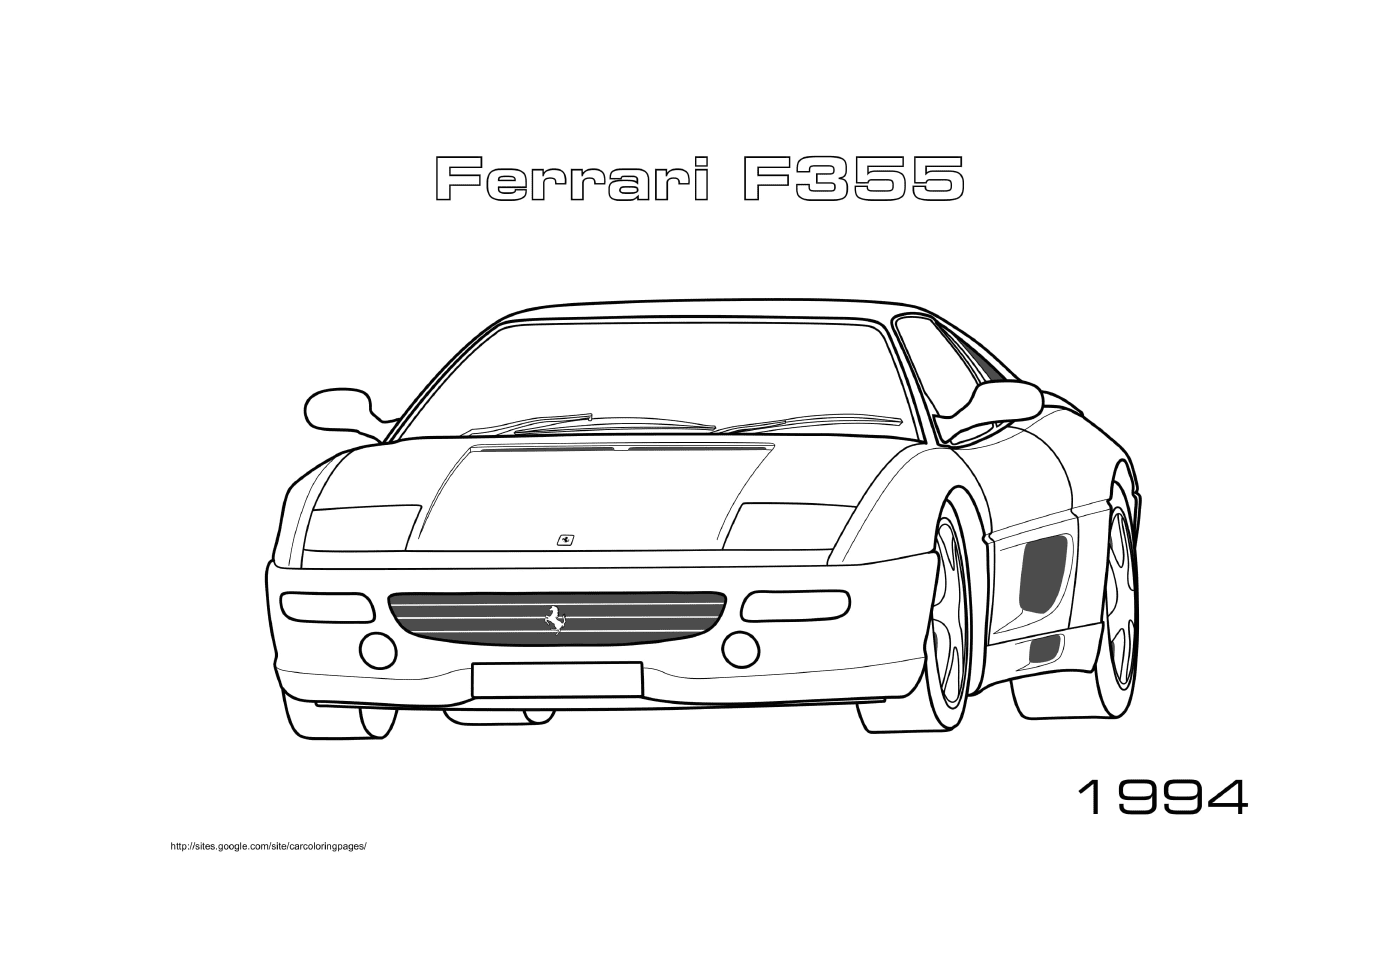  Автомобиль Ferrari F355 1994 